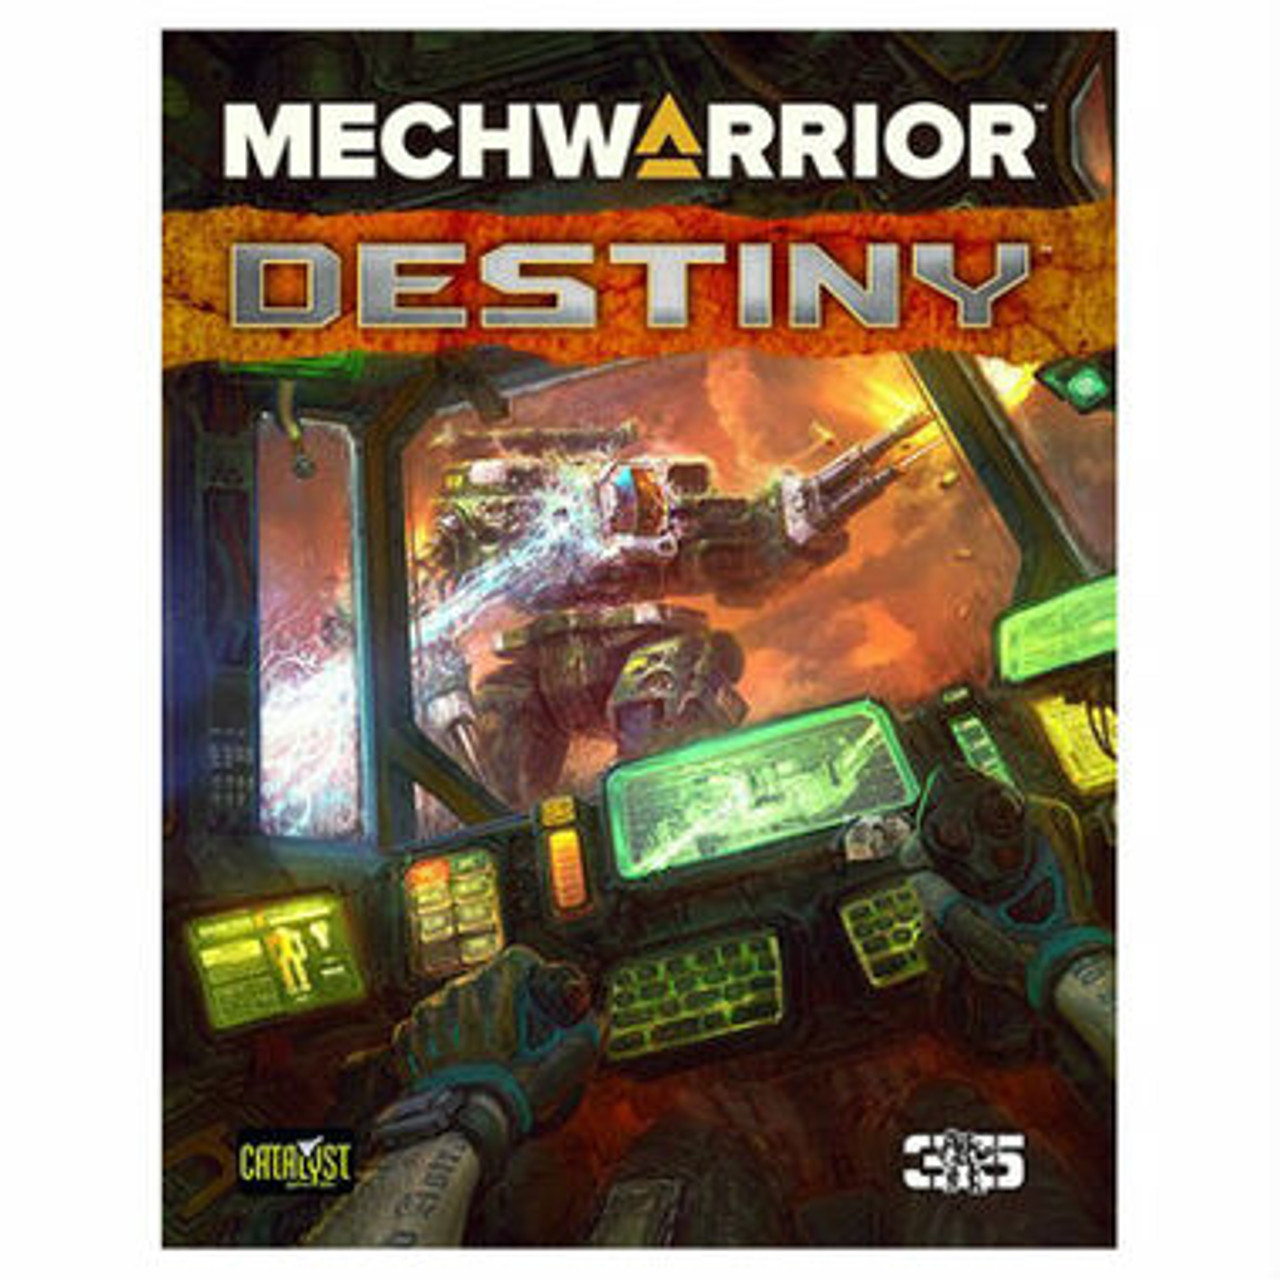 BattleTech: MechWarrior: Destiny